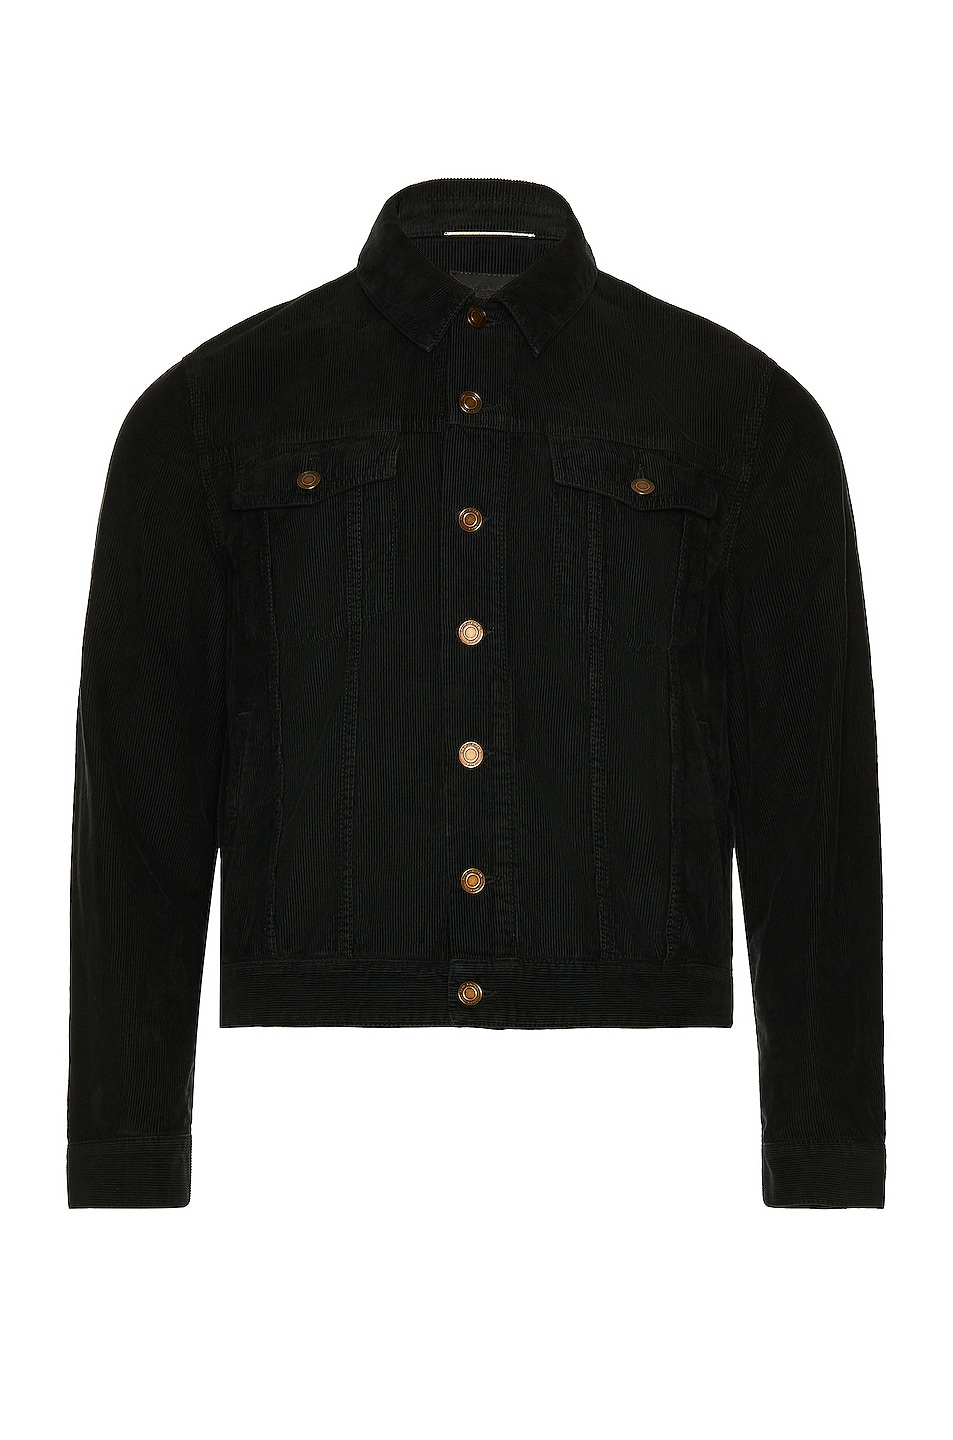 Image 1 of Saint Laurent Desclassic Denim Jacket in Bright Black & Stone